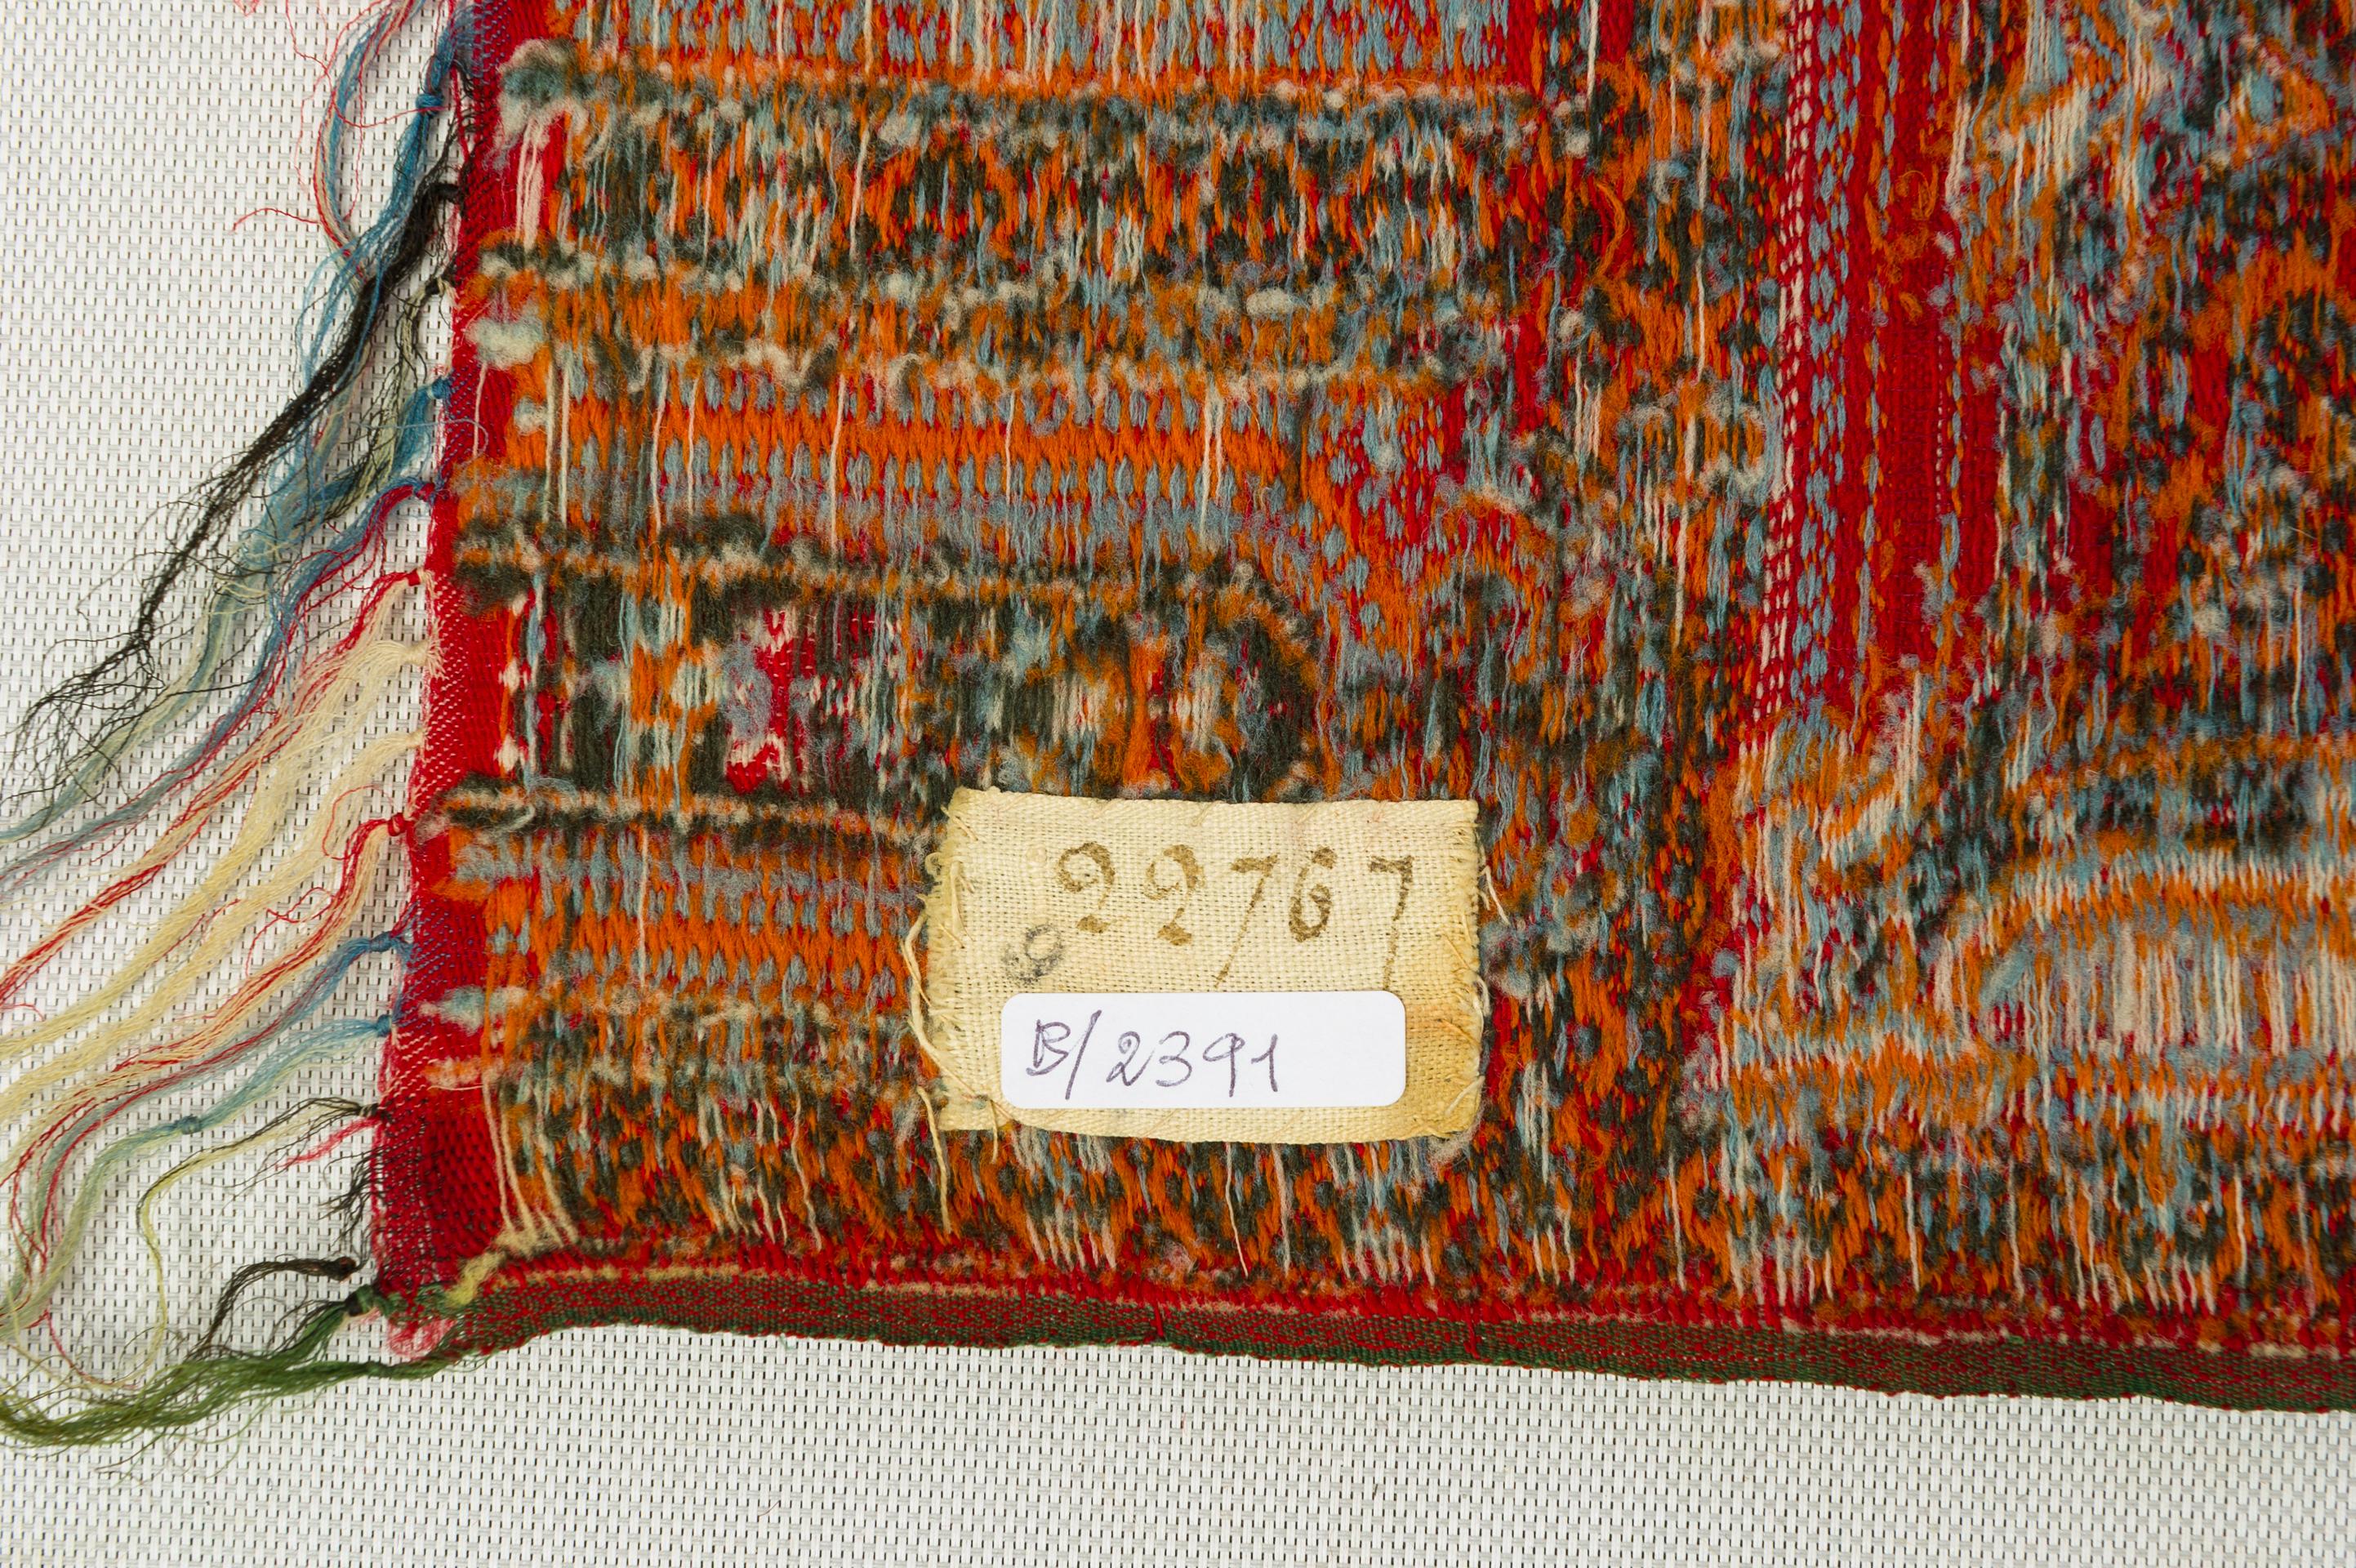 L'excellente qualité du tissu de laine et la richesse des motifs élaborés ont rendu ces châles célèbres dans le monde entier, même auprès des reines. 
Il s'agit d'un produit neuf, non antique, jamais utilisé, parfait, avec un bon prix.
B/2391.